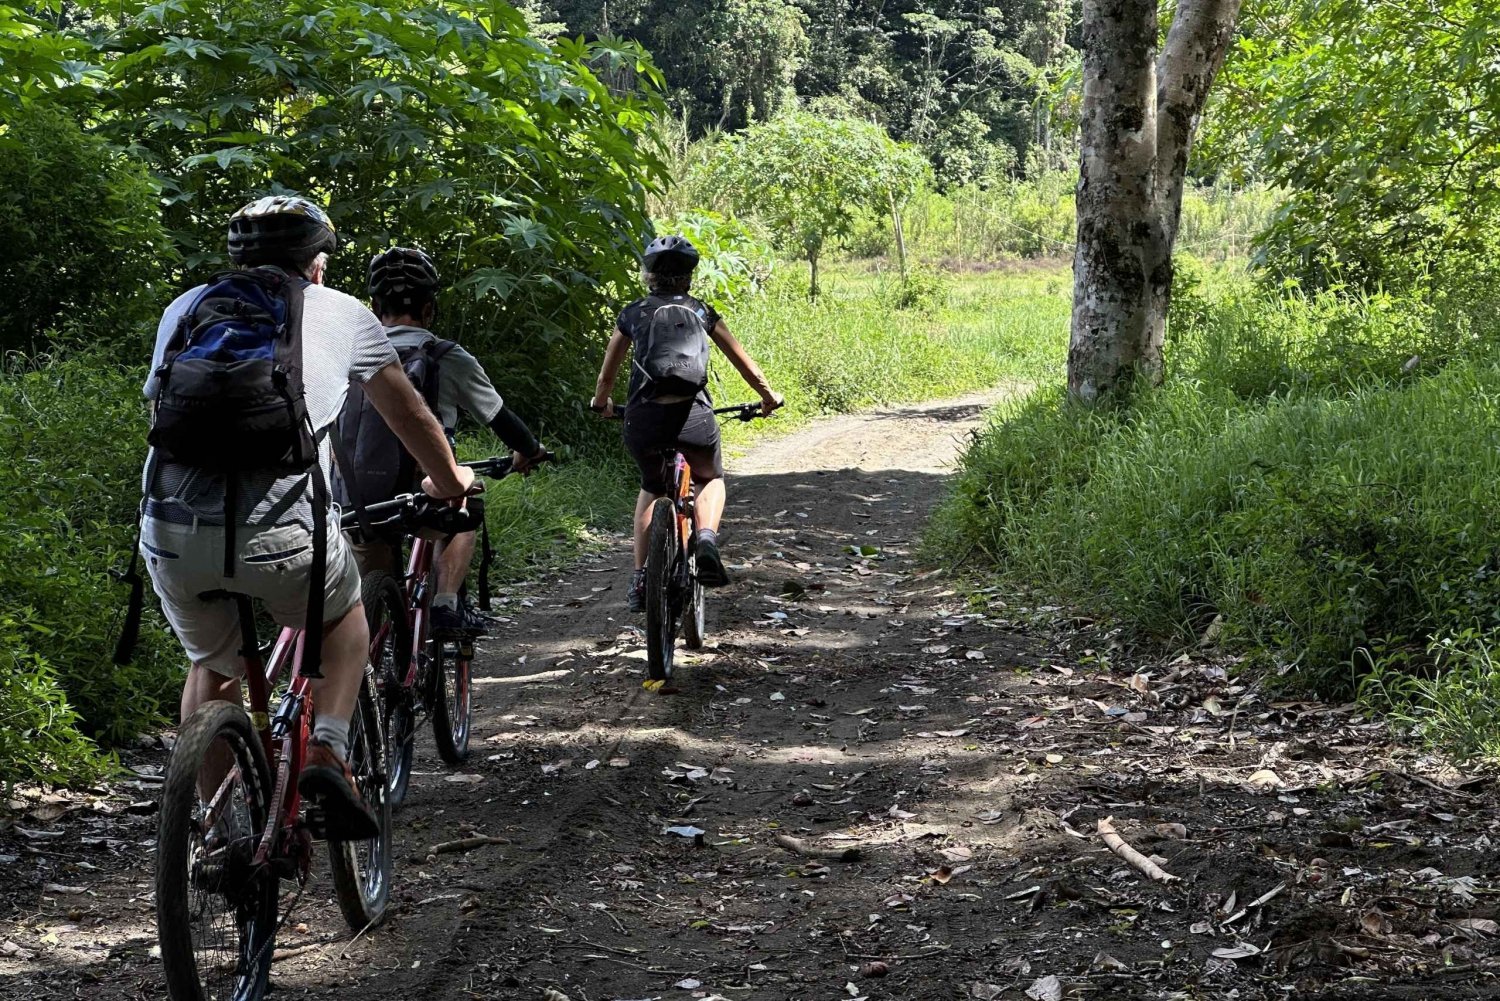 Munduk/Bali: Jungle Trek, Canoe, Waterfall & Cycling